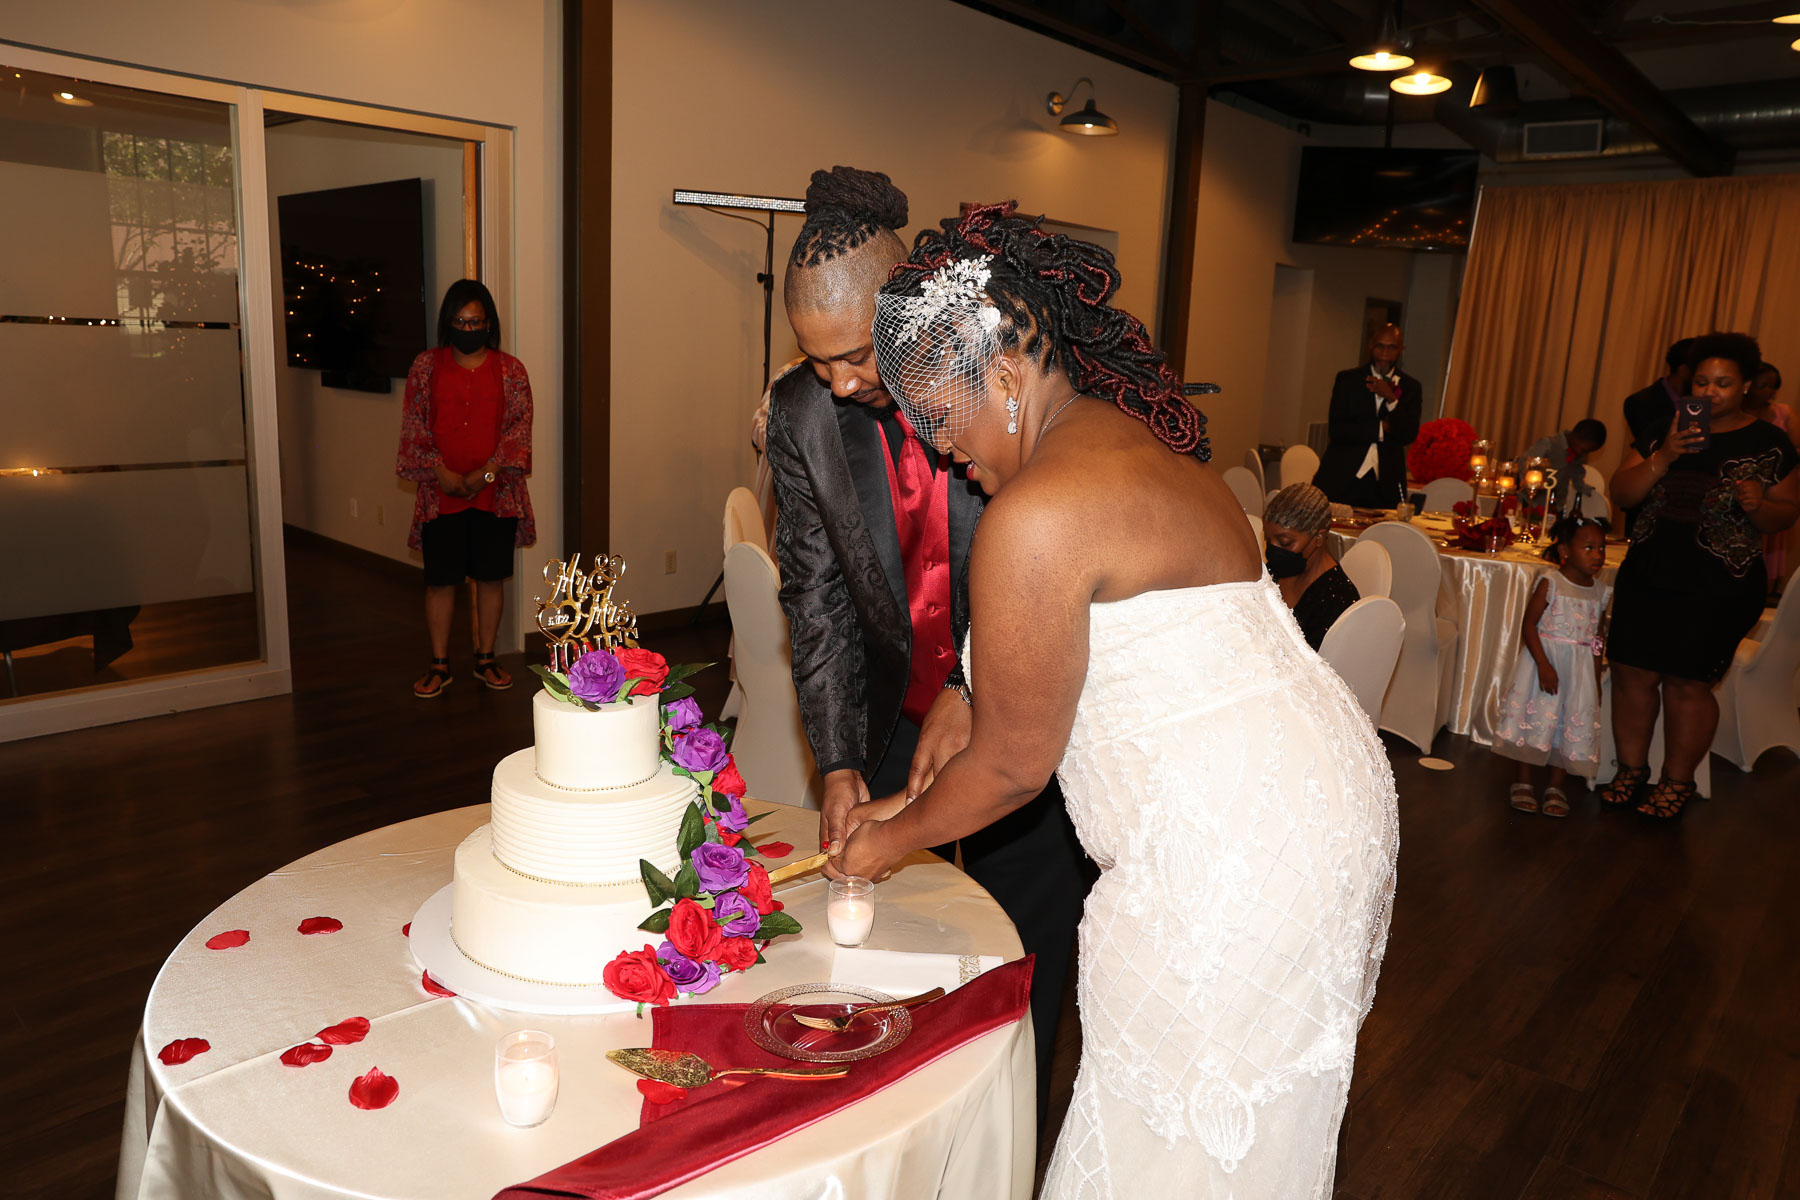 The newlyweds slicing the wedding cake